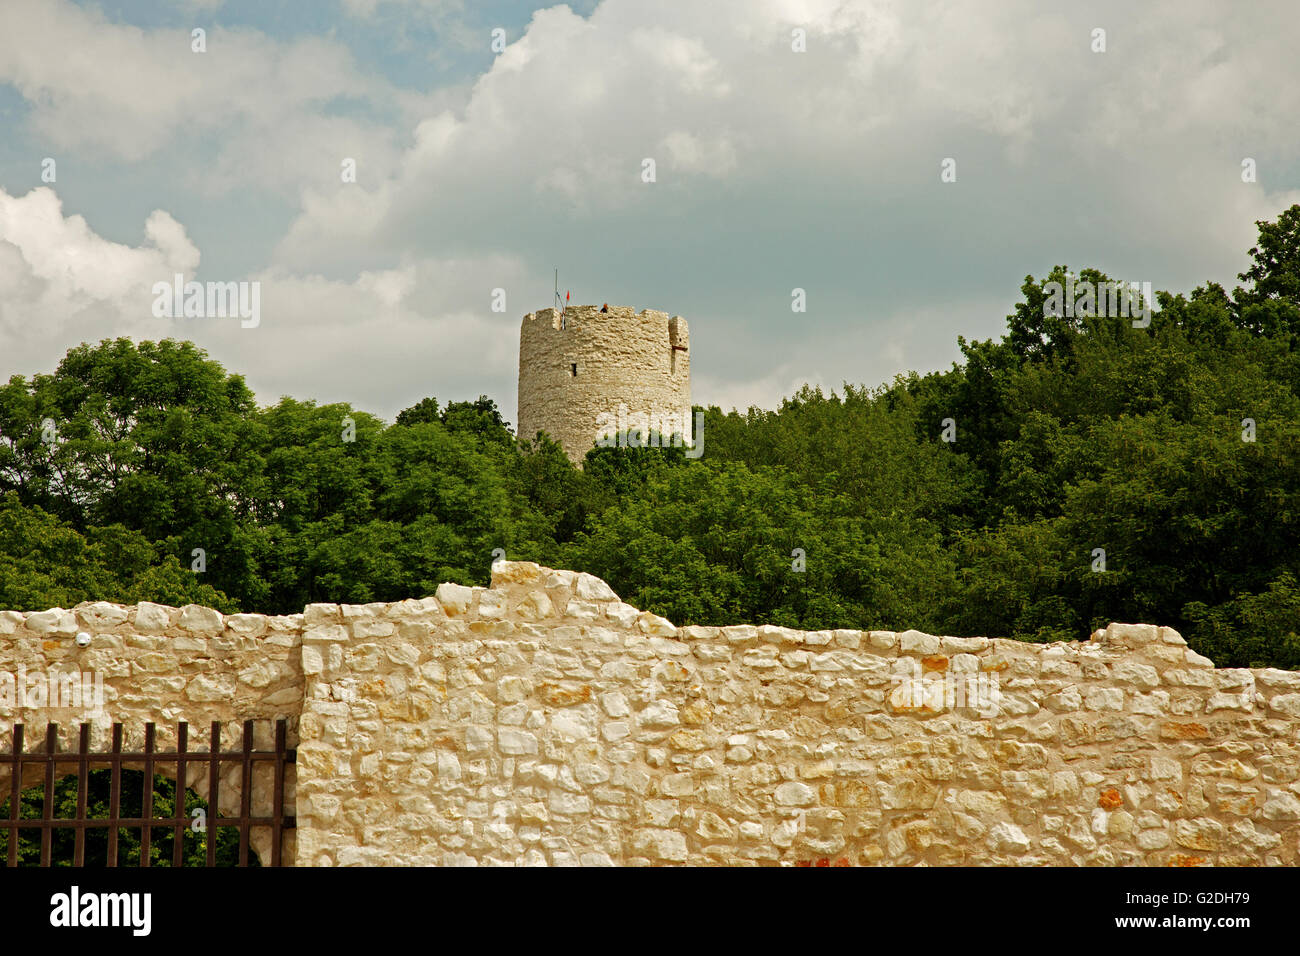 La Pologne, la vue depuis les ruines du château de la tour défensive à Kazimierz Dolny, avec au premier plan visible fragment Banque D'Images